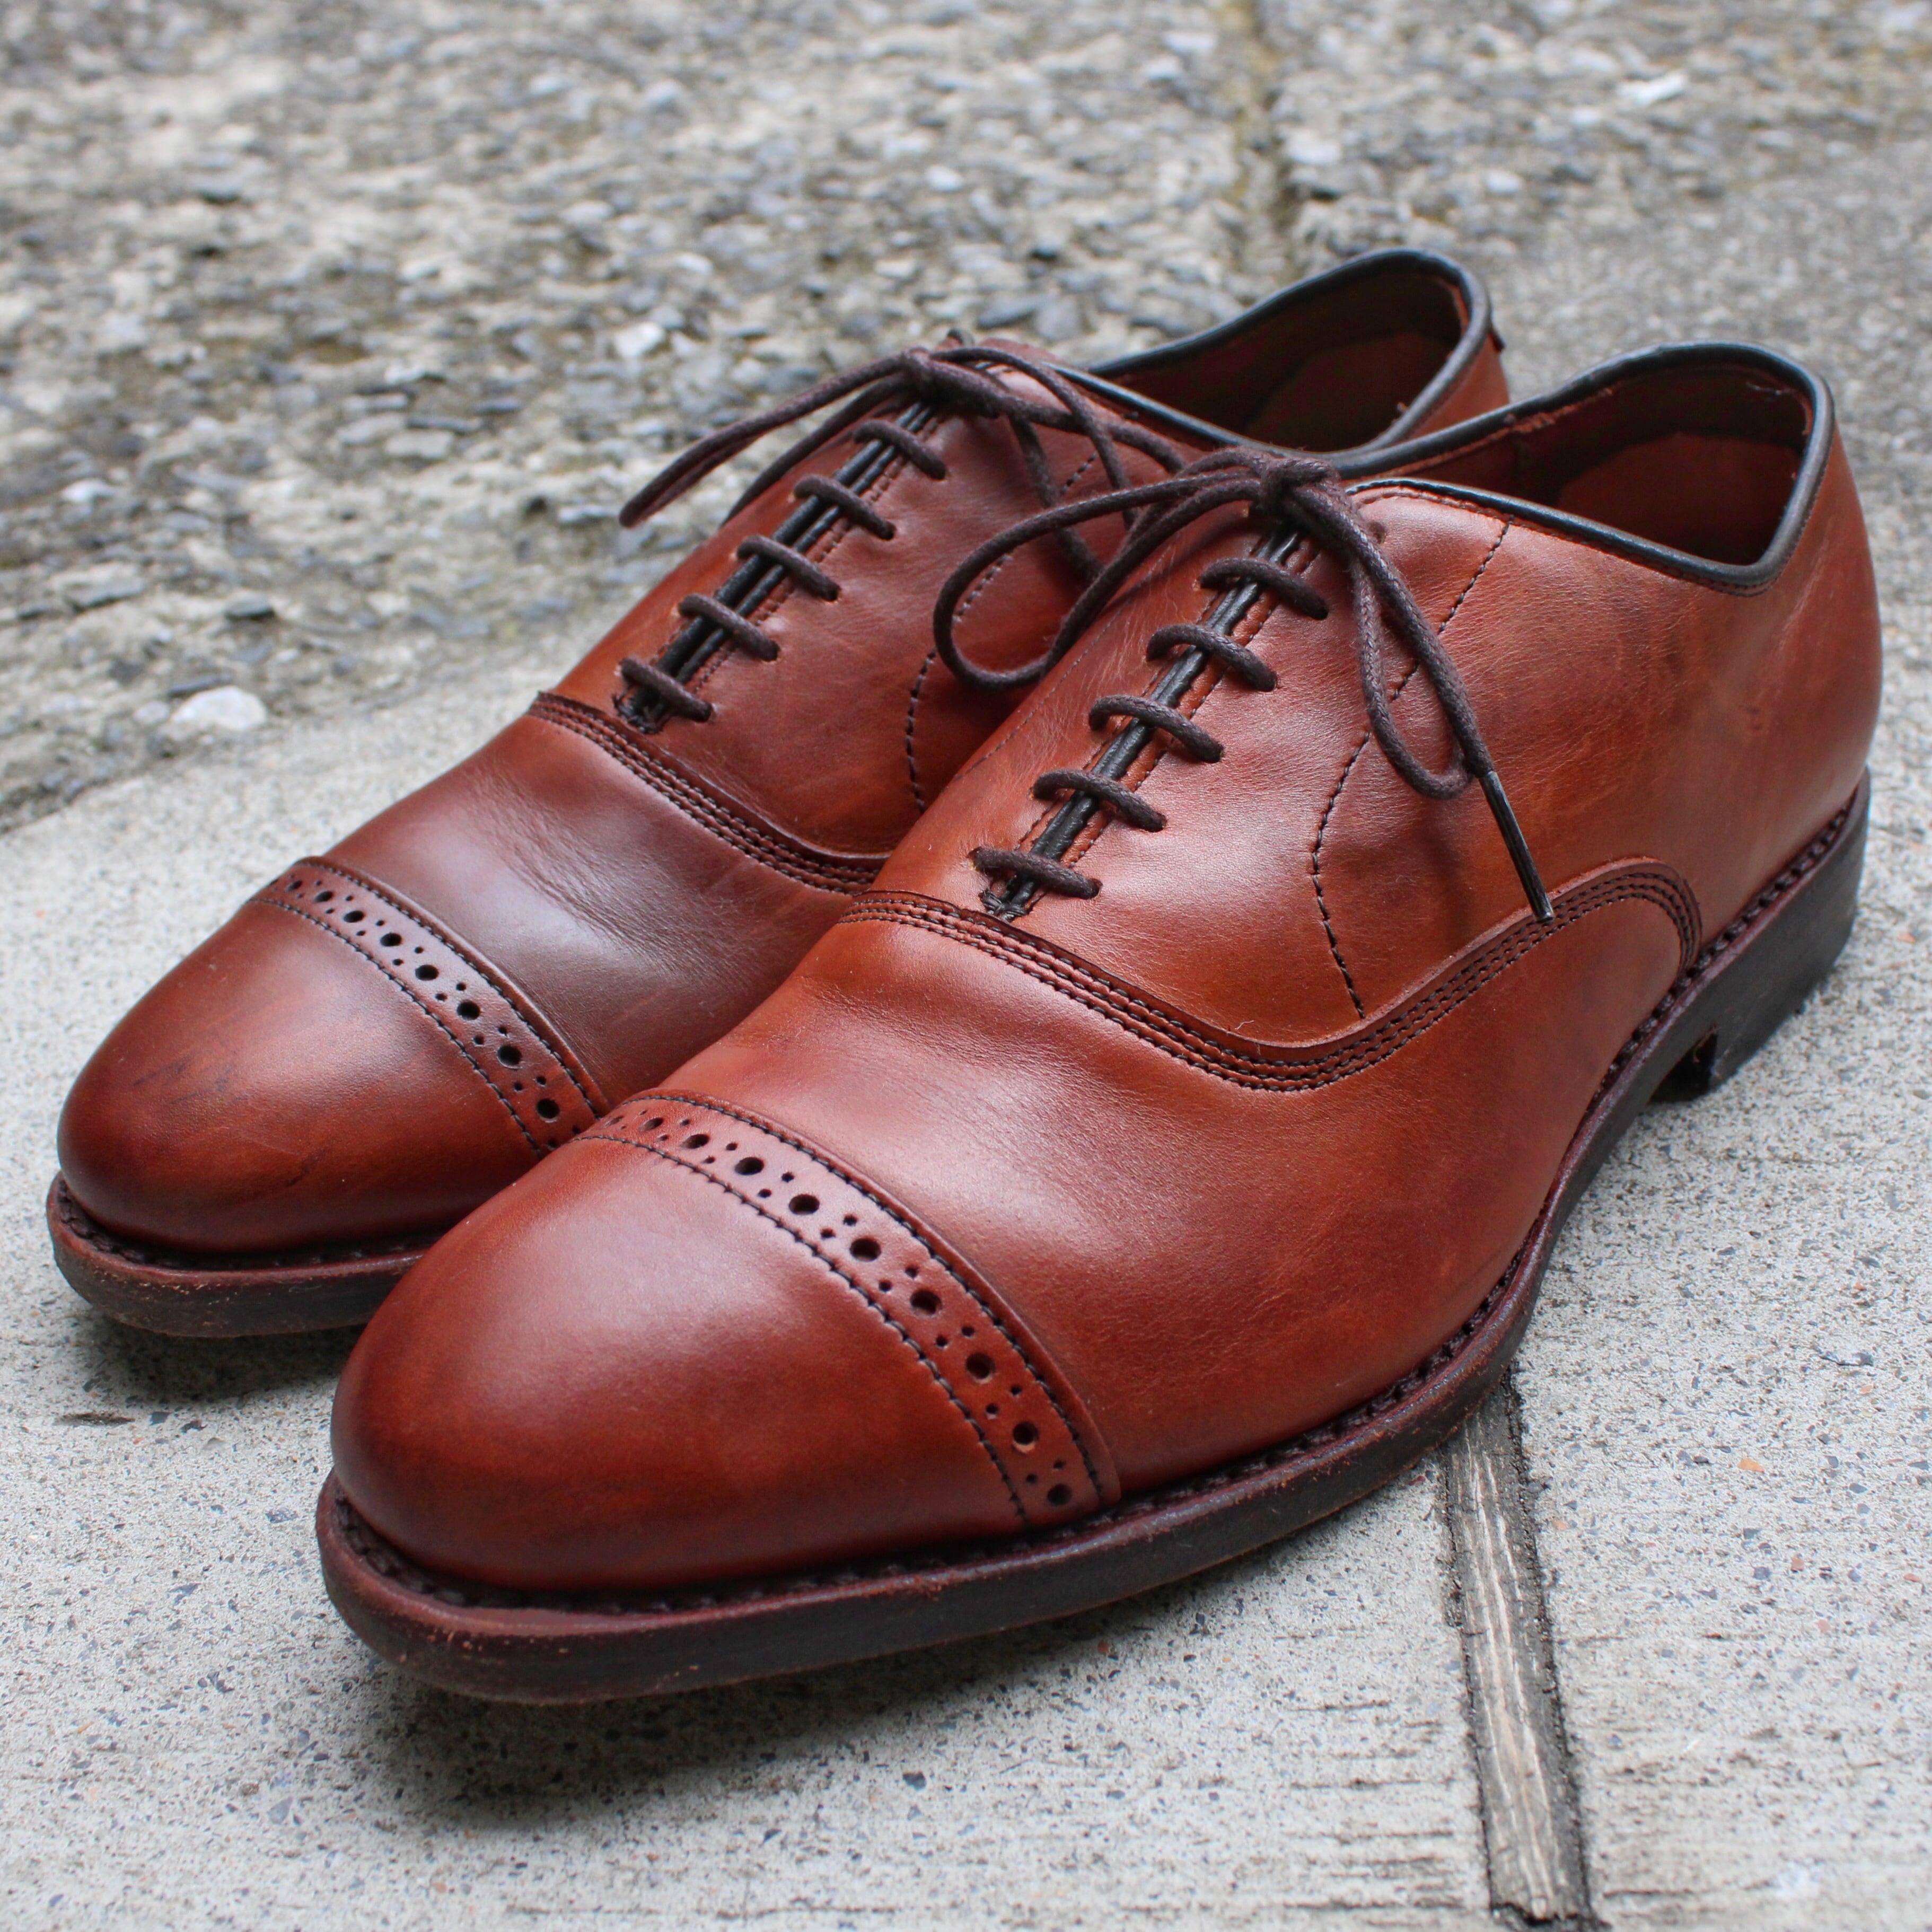 Allen Edmonds / Fifth Avenue Leather Shoes | TEKITOU CLOTHING